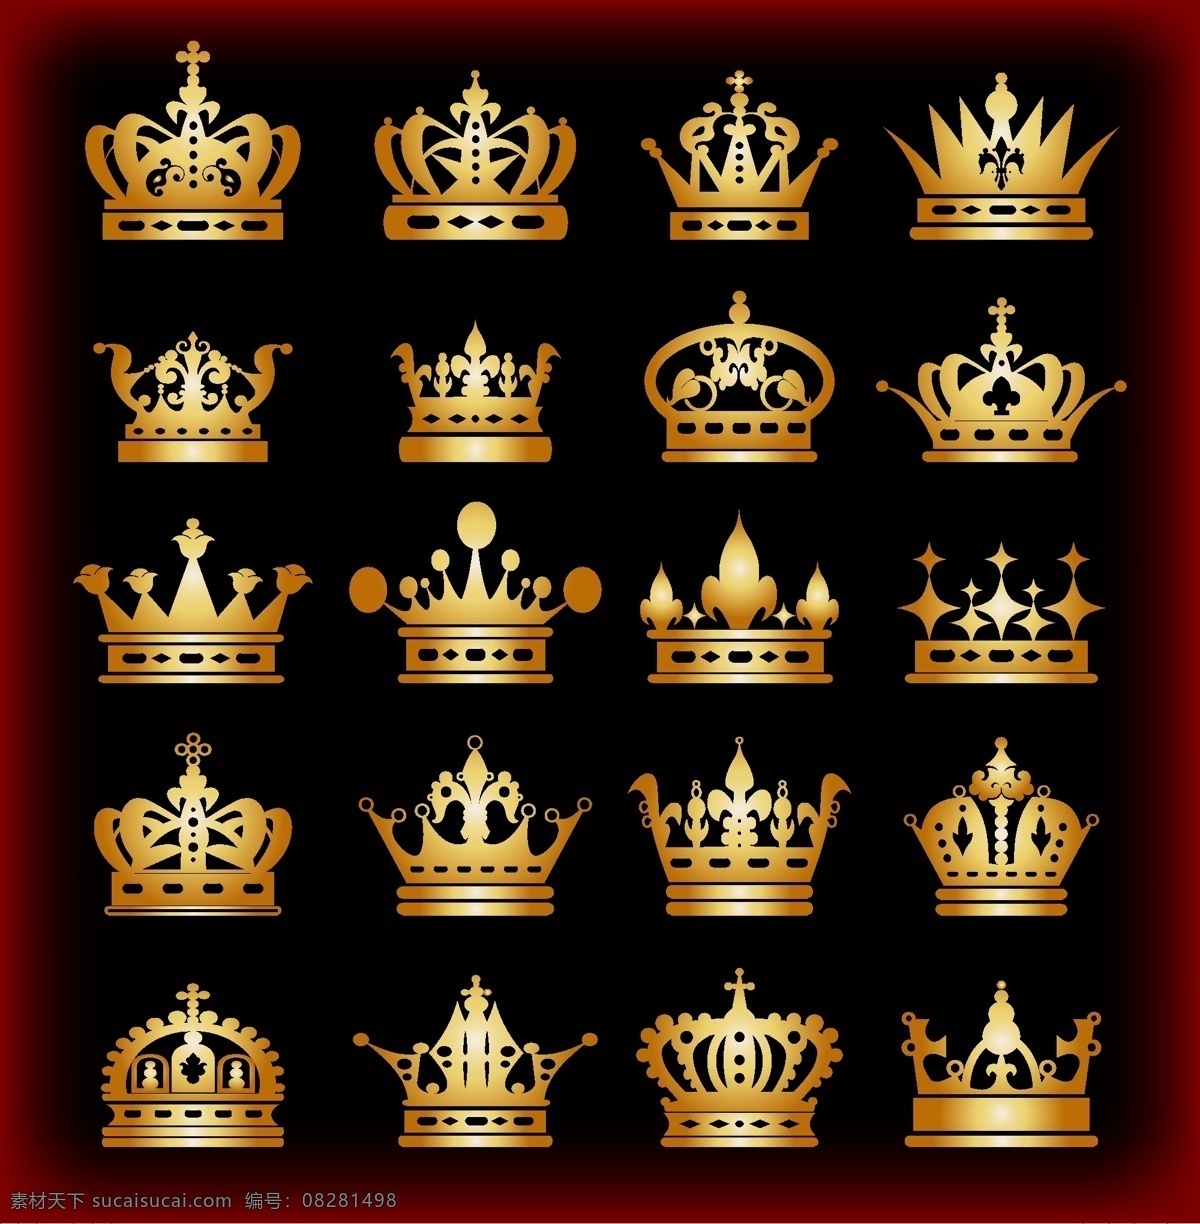 复古 欧式 皇冠 设计素材 金色 装饰 矢量素材 黑色